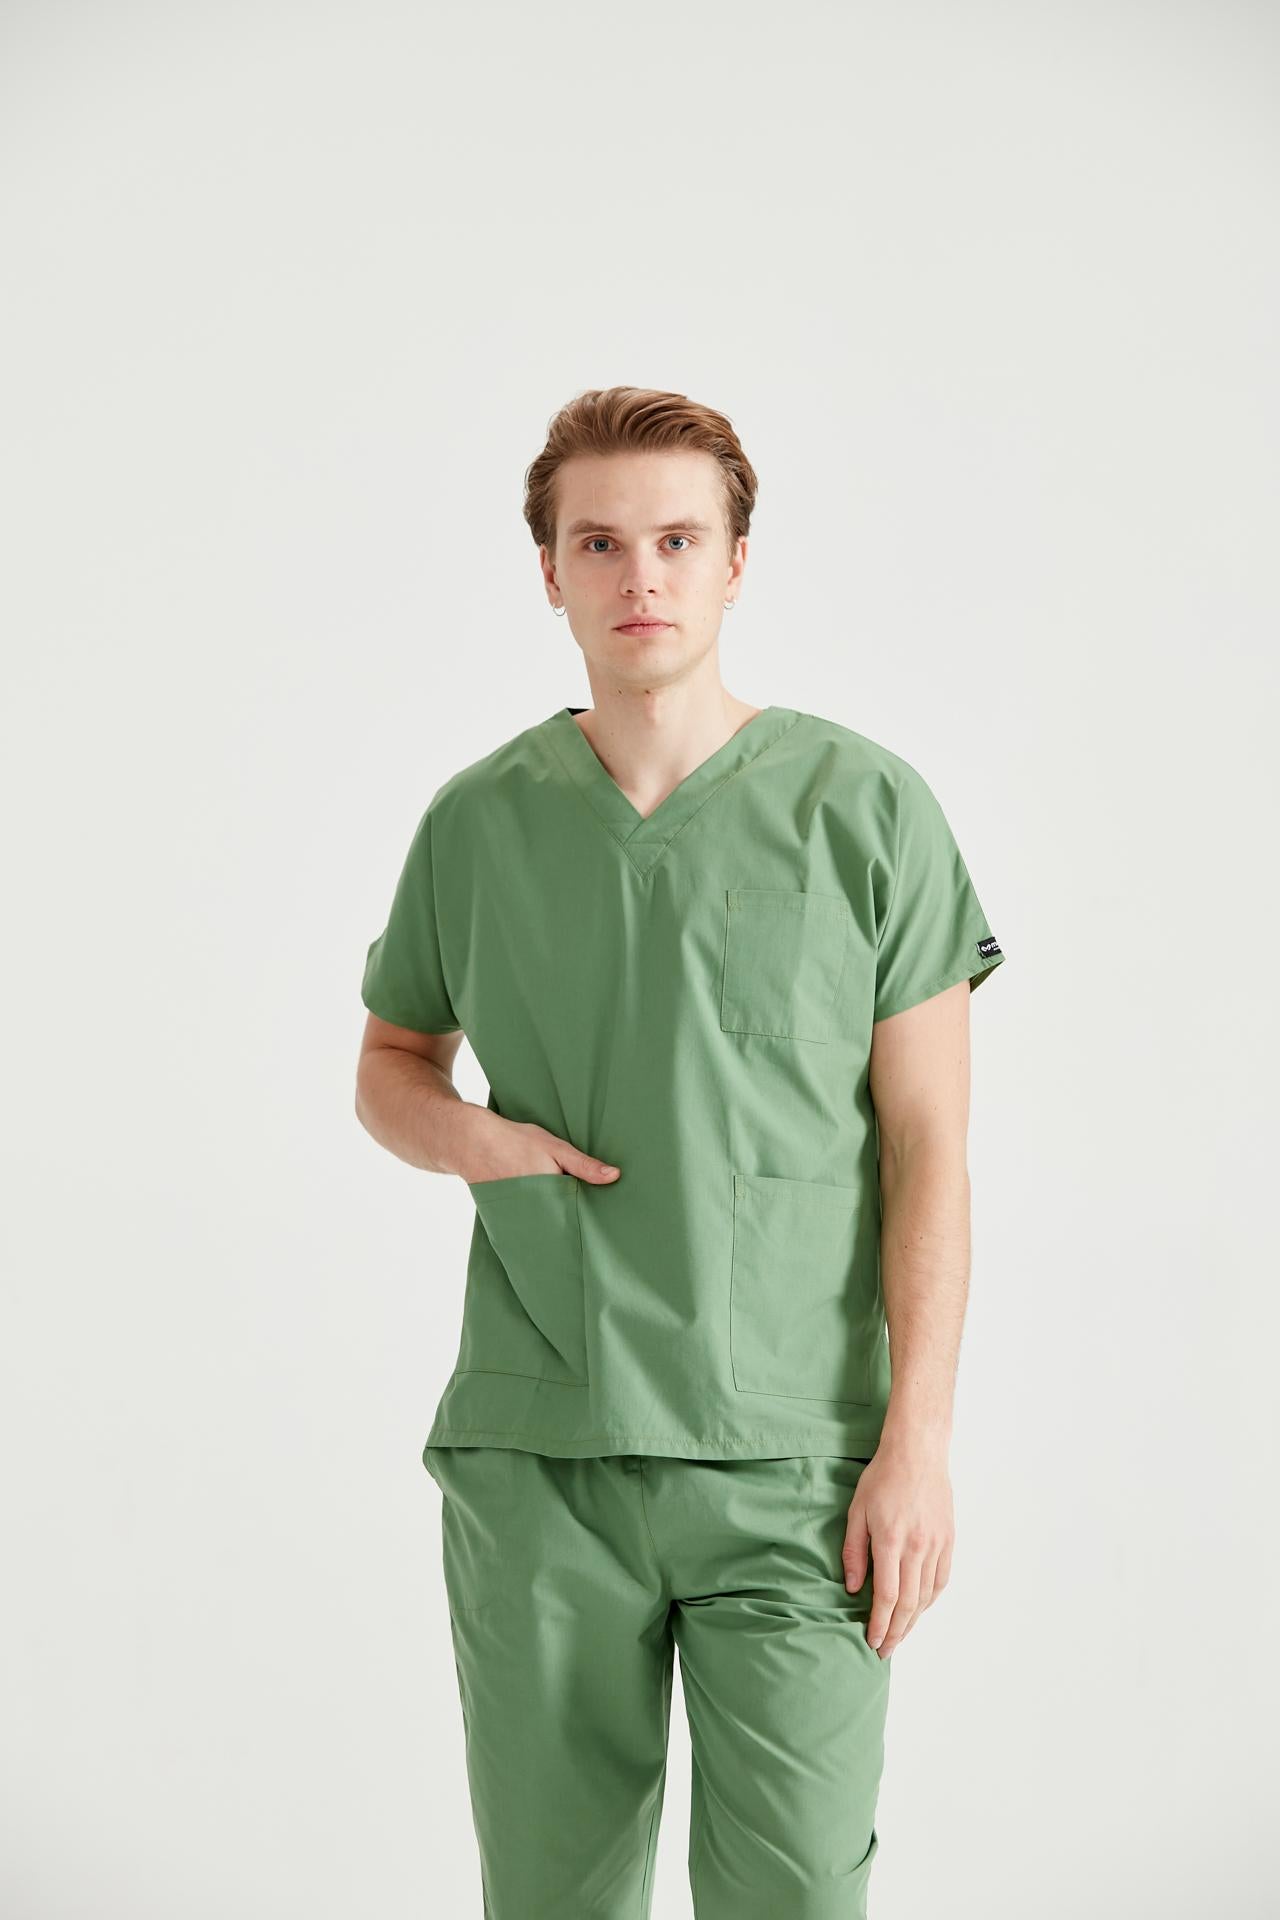 Pistachio Green Medical Suit, Men - Pistaccio - Classic Model